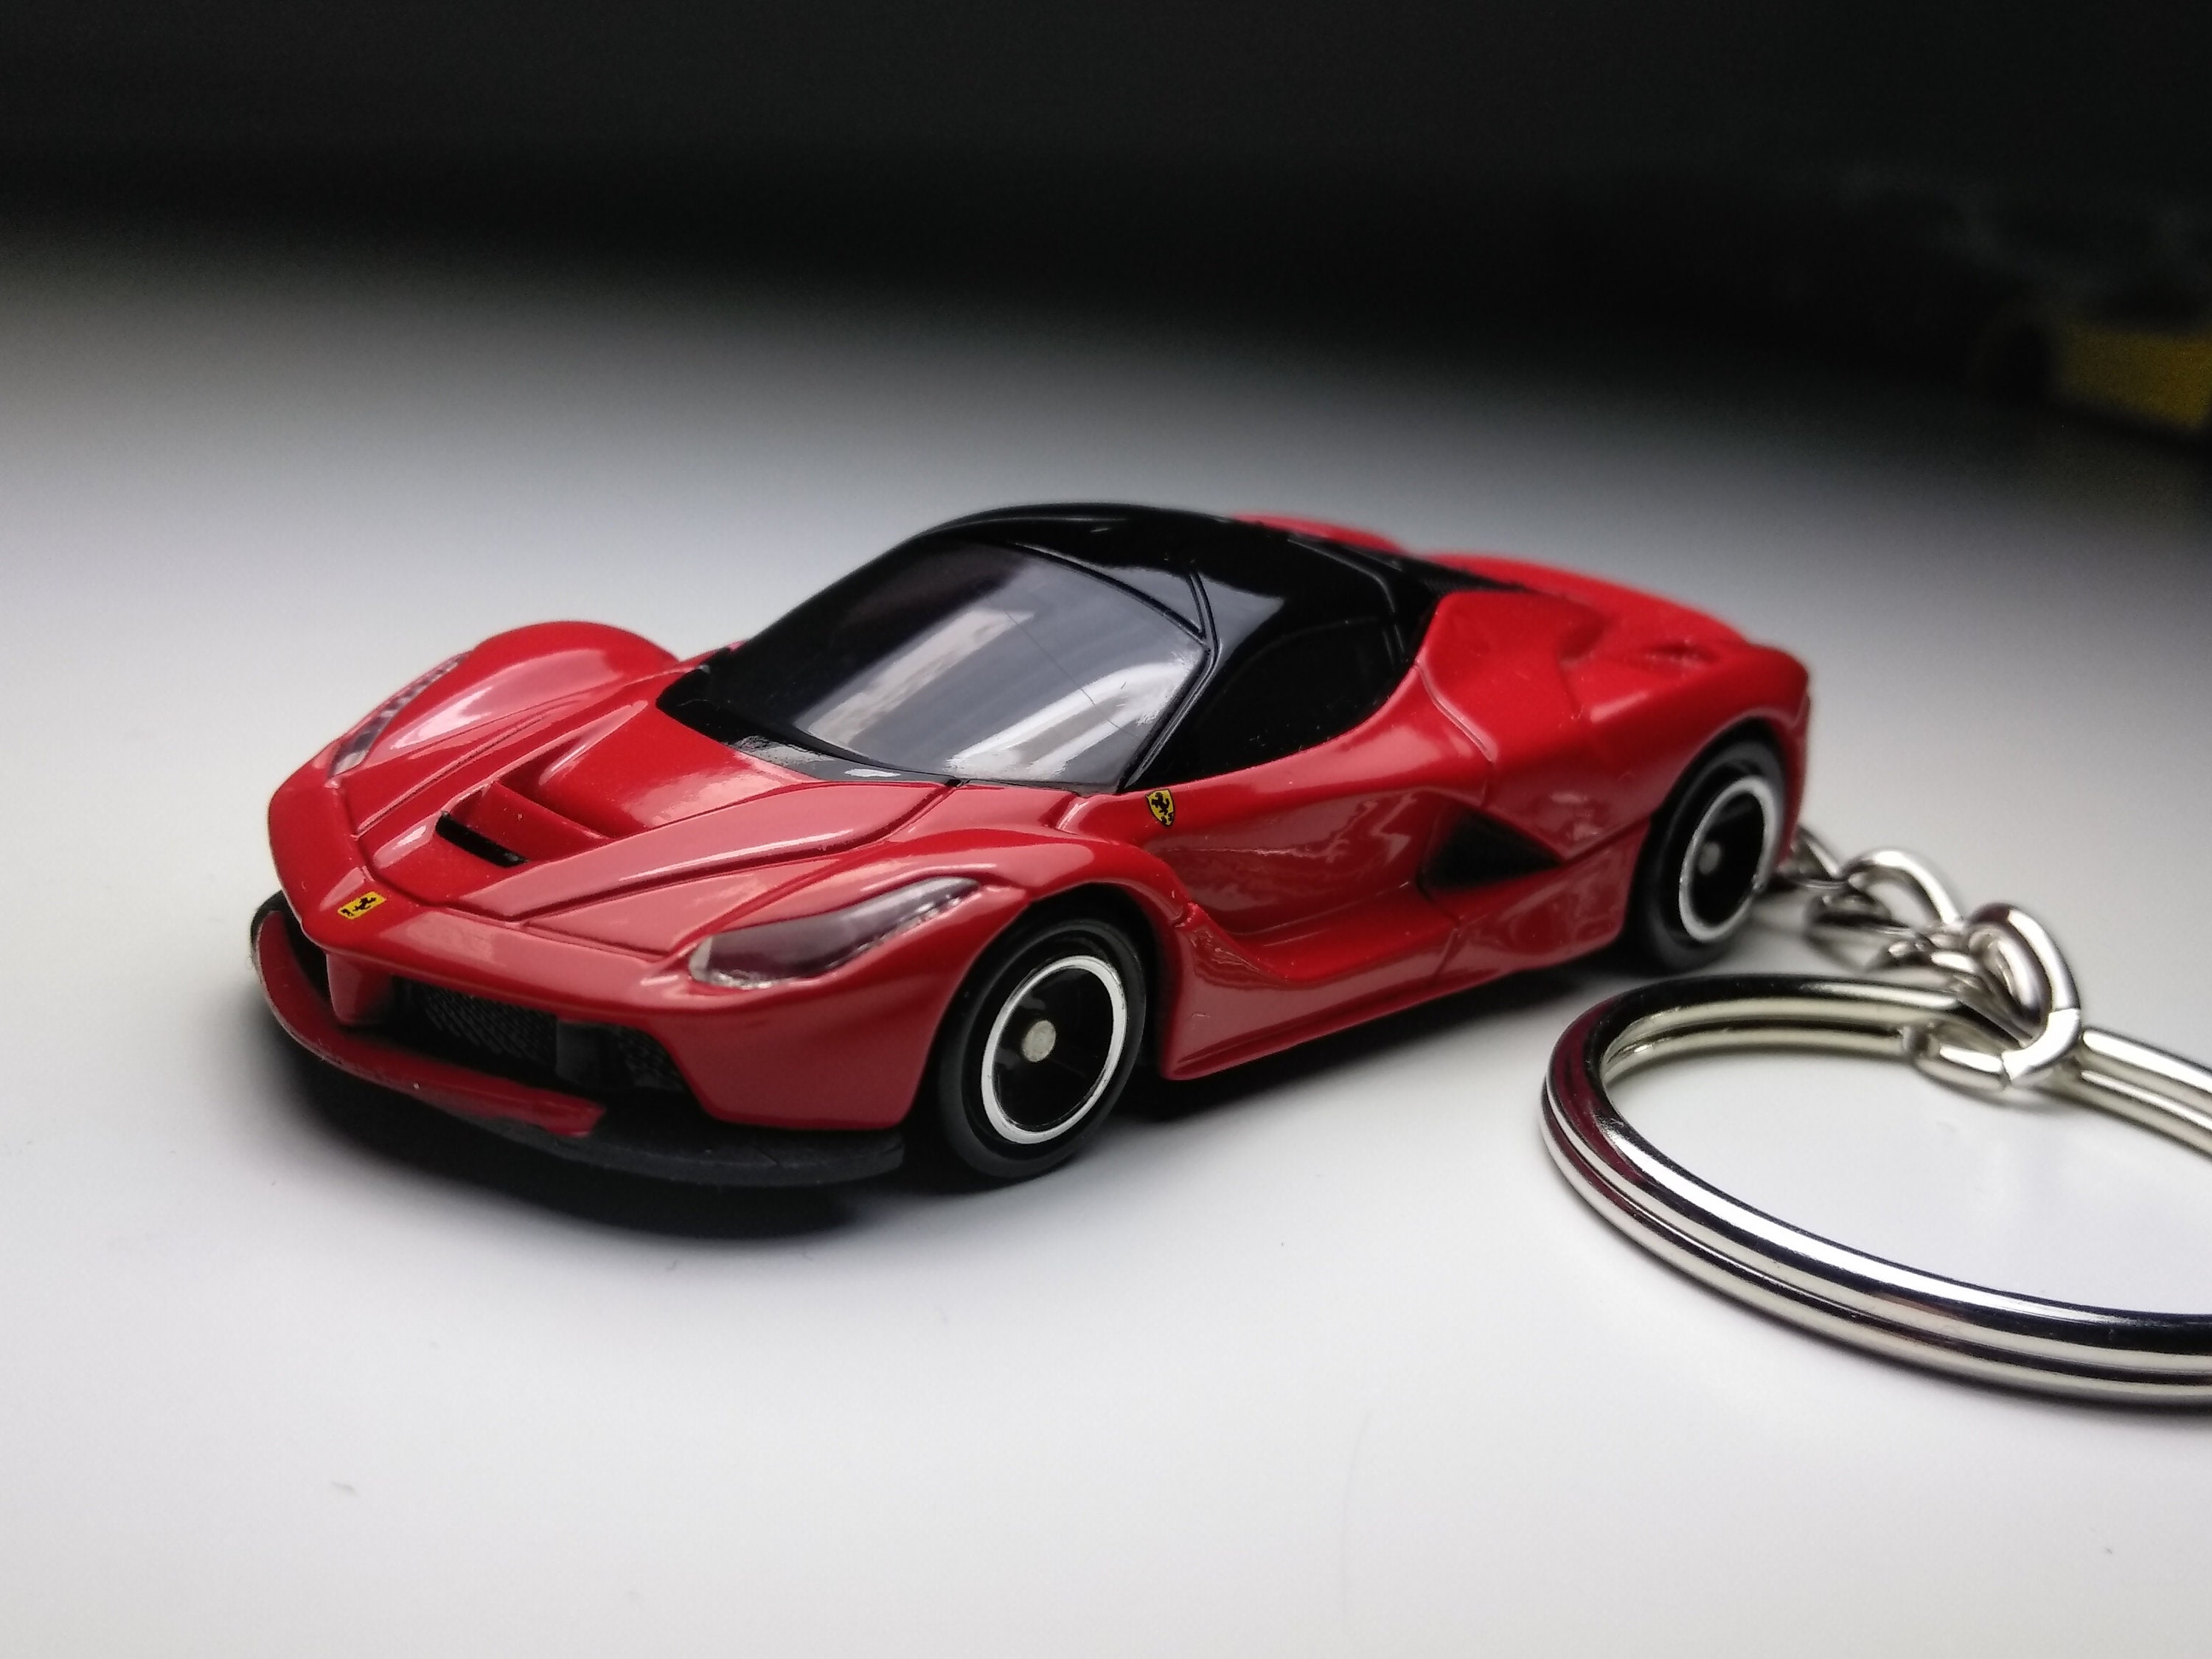 Collection de deux porte-clés en cuir Ferrari d'origine - Ferrari